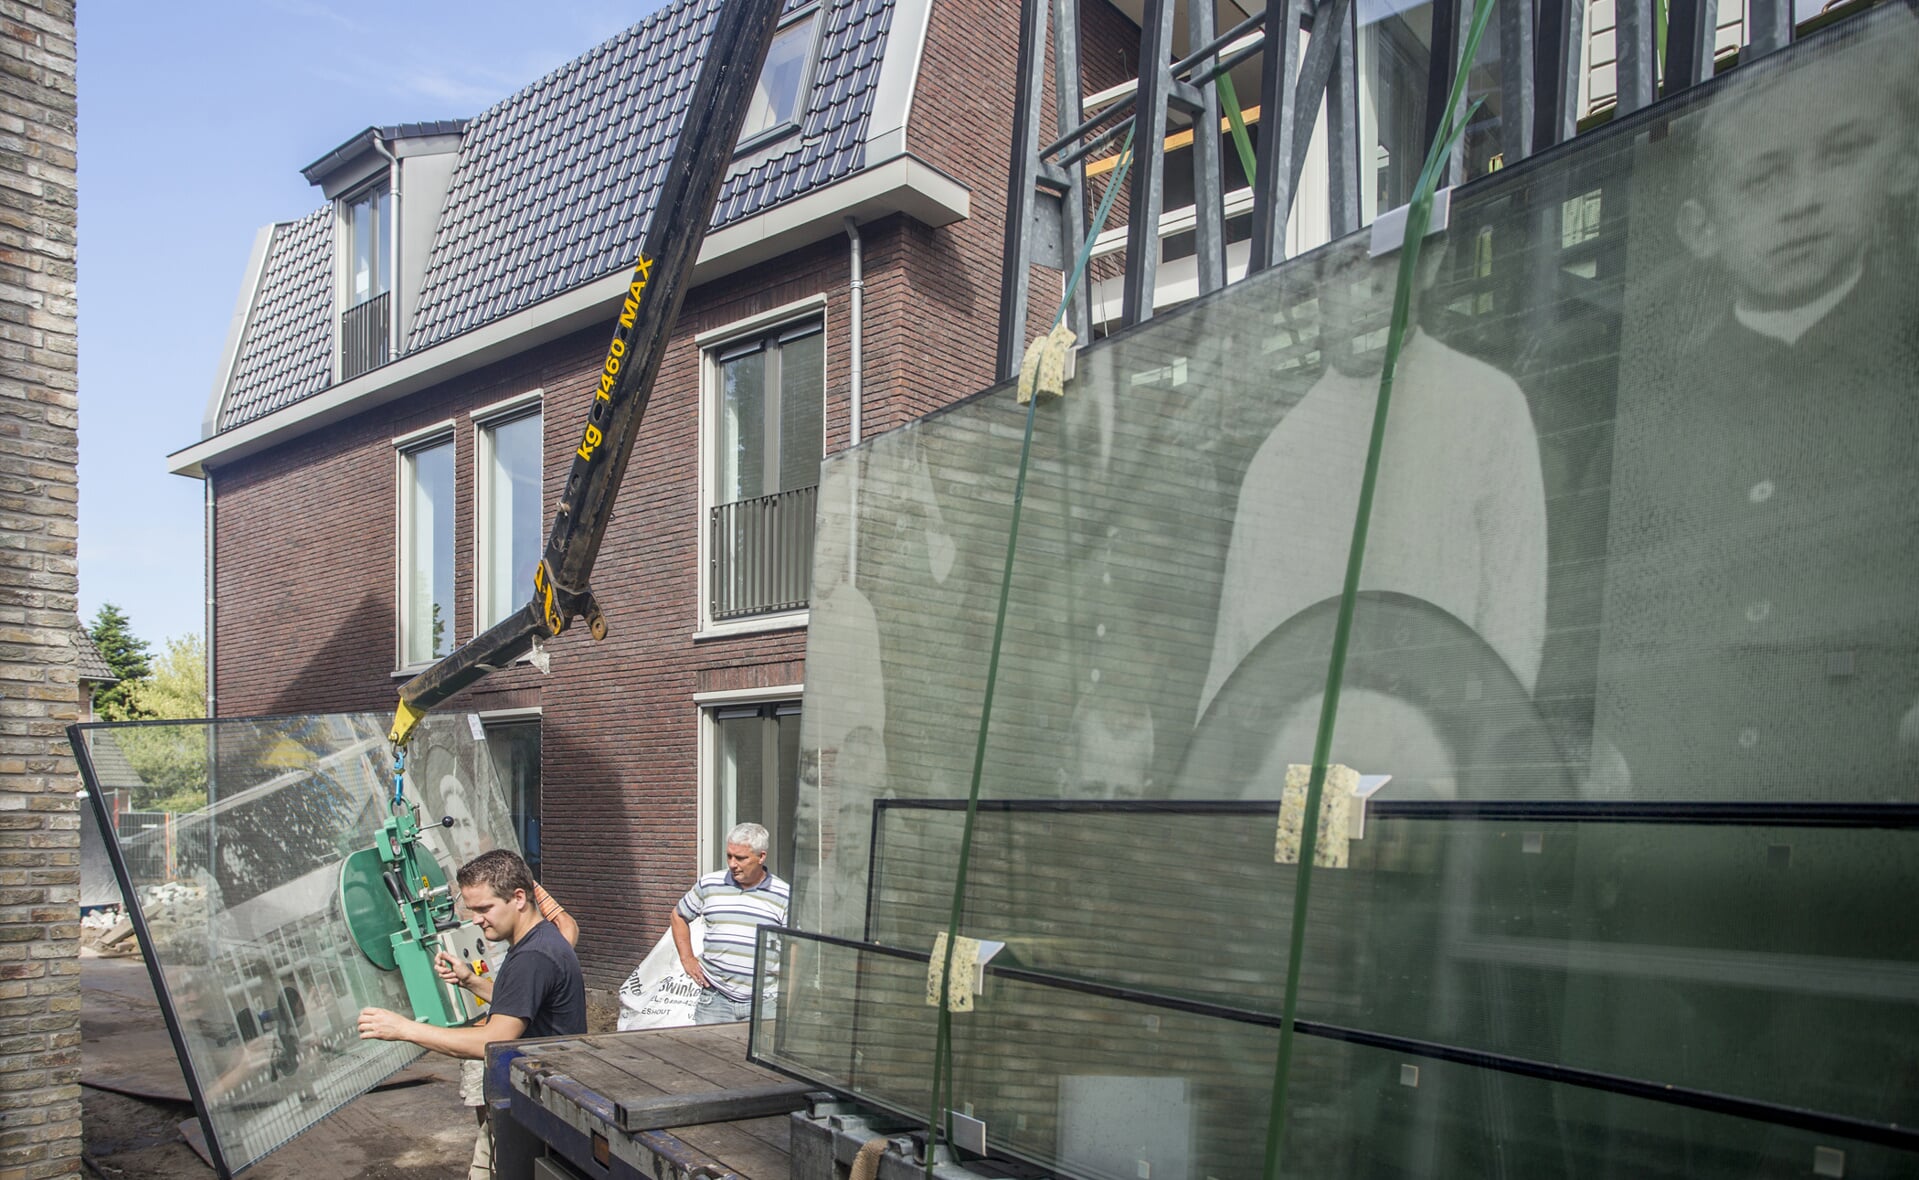 Impressie van het plan Witte School in Liempde. In Liempde komen jaarlijks vijftien woningen op de huurdersmarkt. (Foto: Peter de Koning).